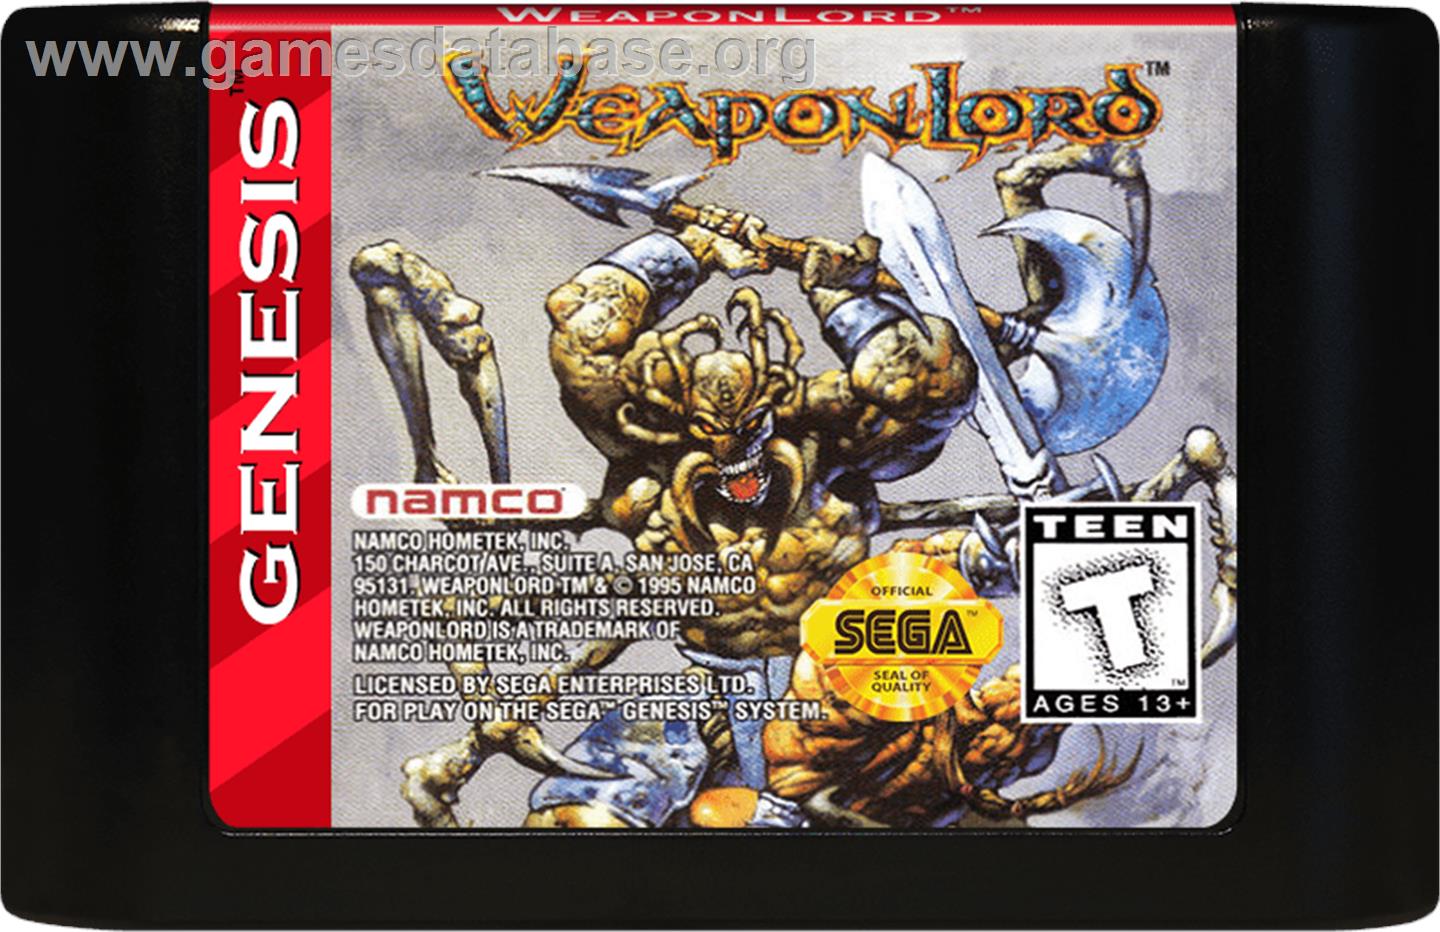 Weaponlord - Sega Genesis - Artwork - Cartridge